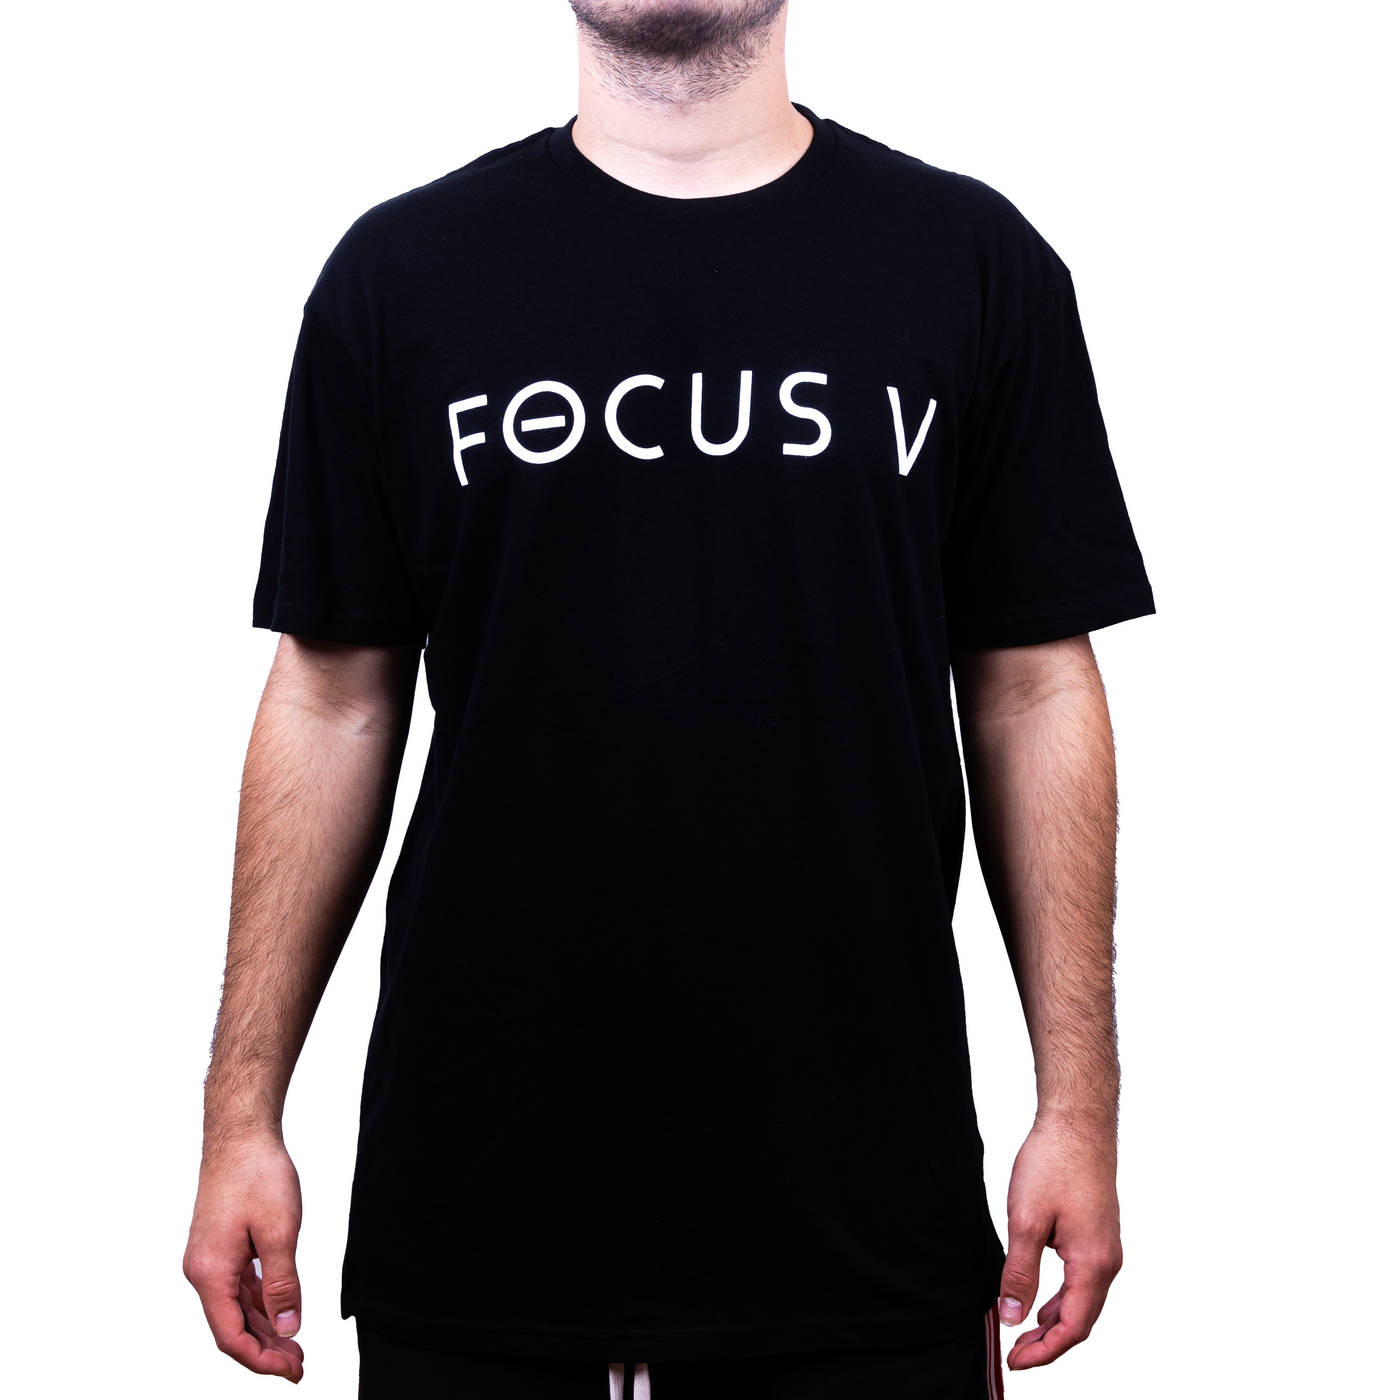 Focus V T-Shirt - Medium